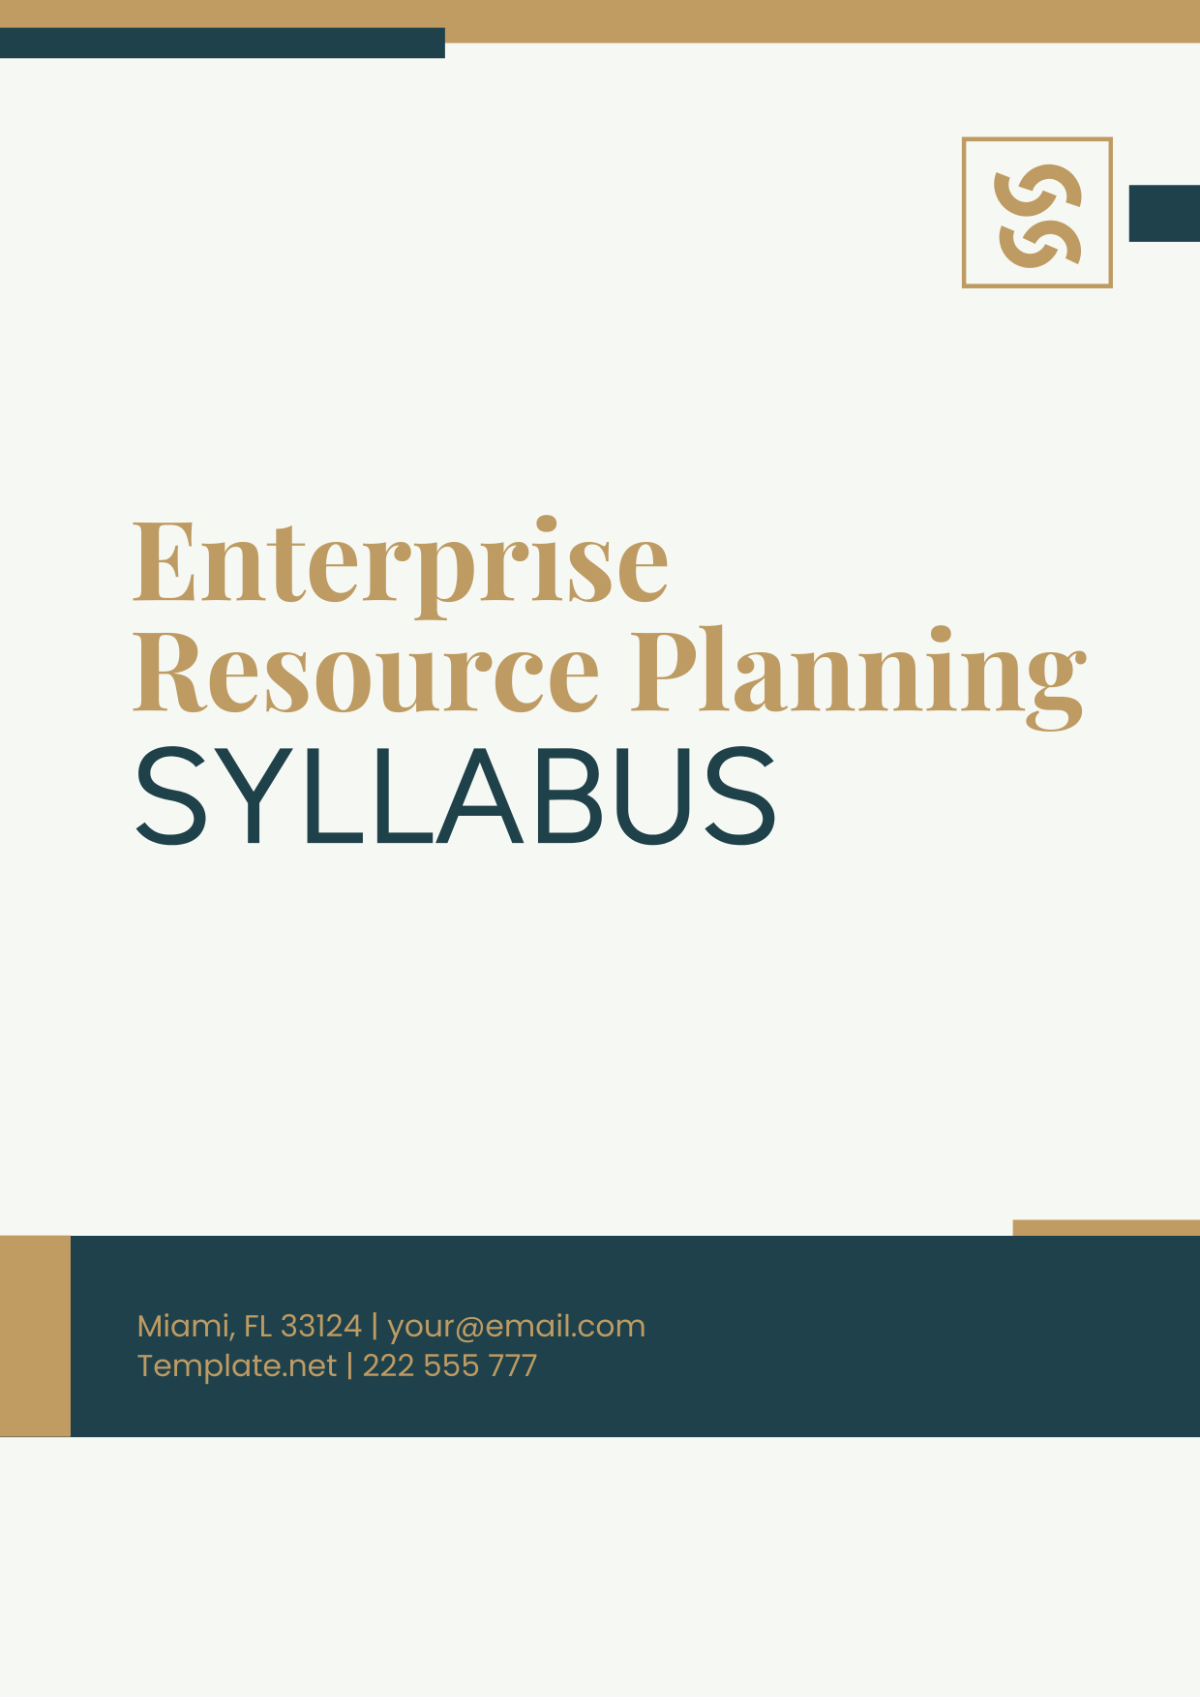 Enterprise Resource Planning Syllabus Template